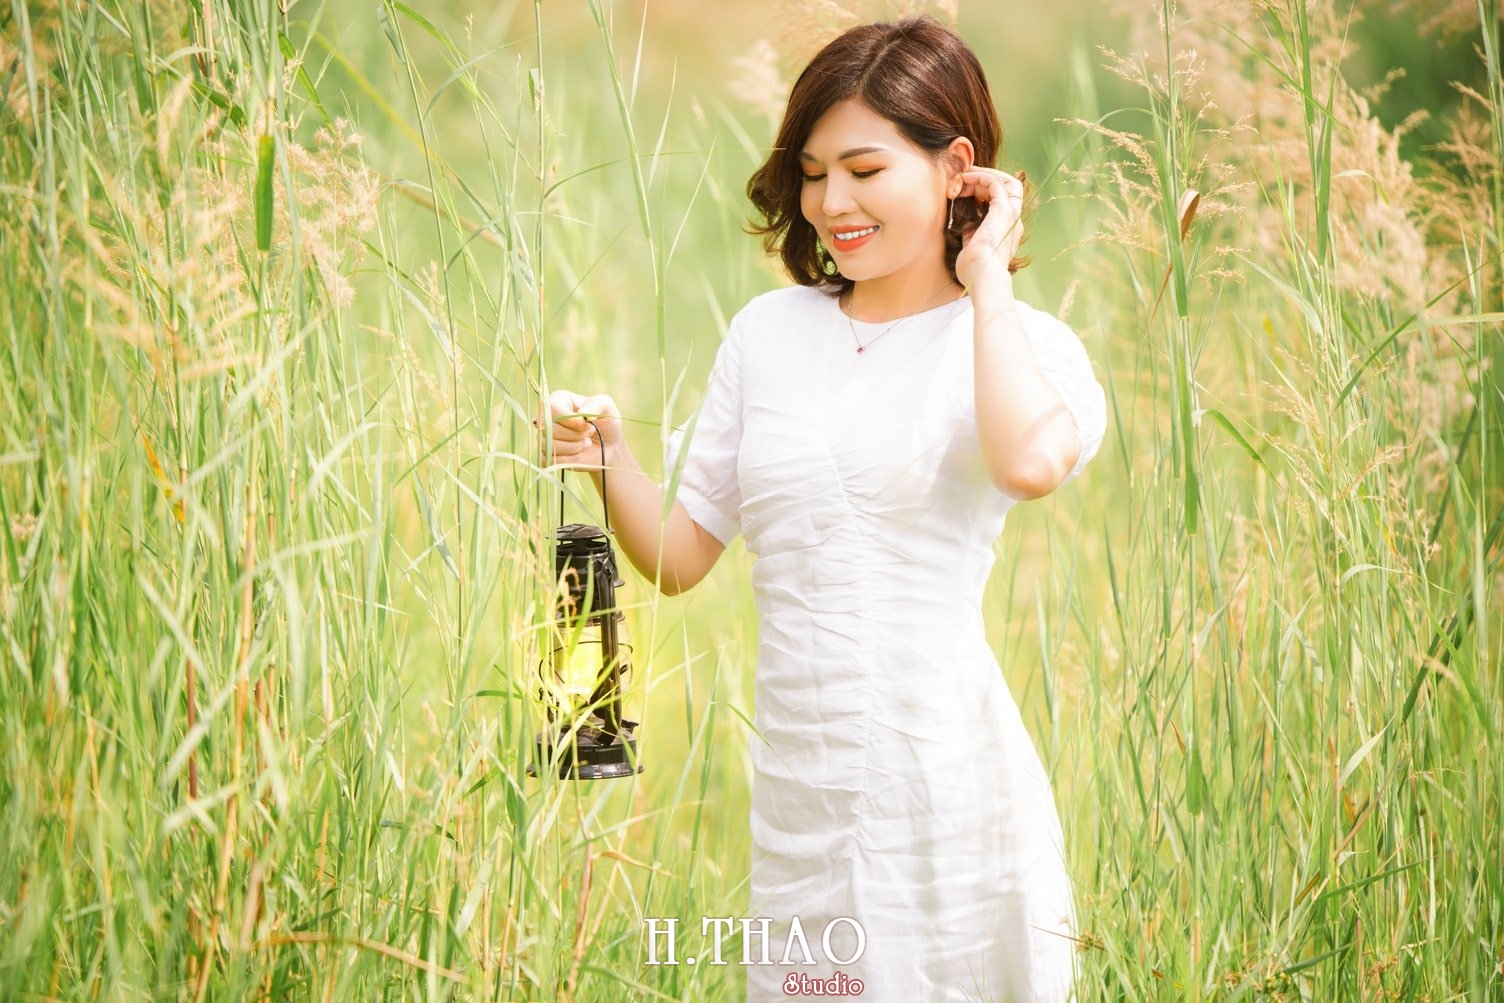 Canh Dong Co Lau 2 - Chụp ảnh với cánh đồng cỏ lau quận 9 tuyệt đẹp - HThao Studio